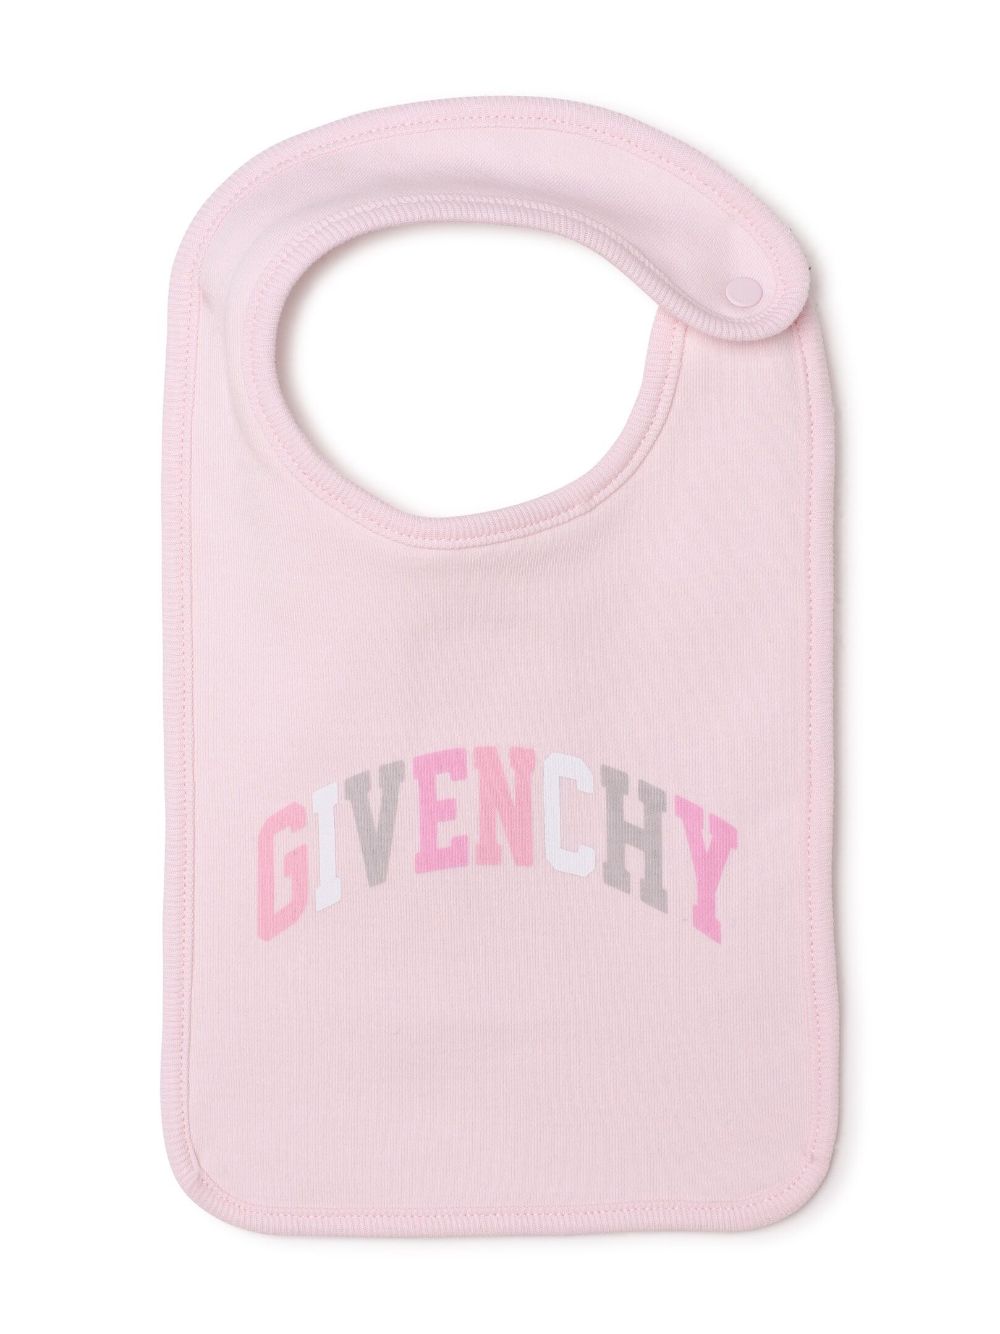 Pink onesie bib and hat cotton baby girl GIVENCHY set | Carofiglio Junior